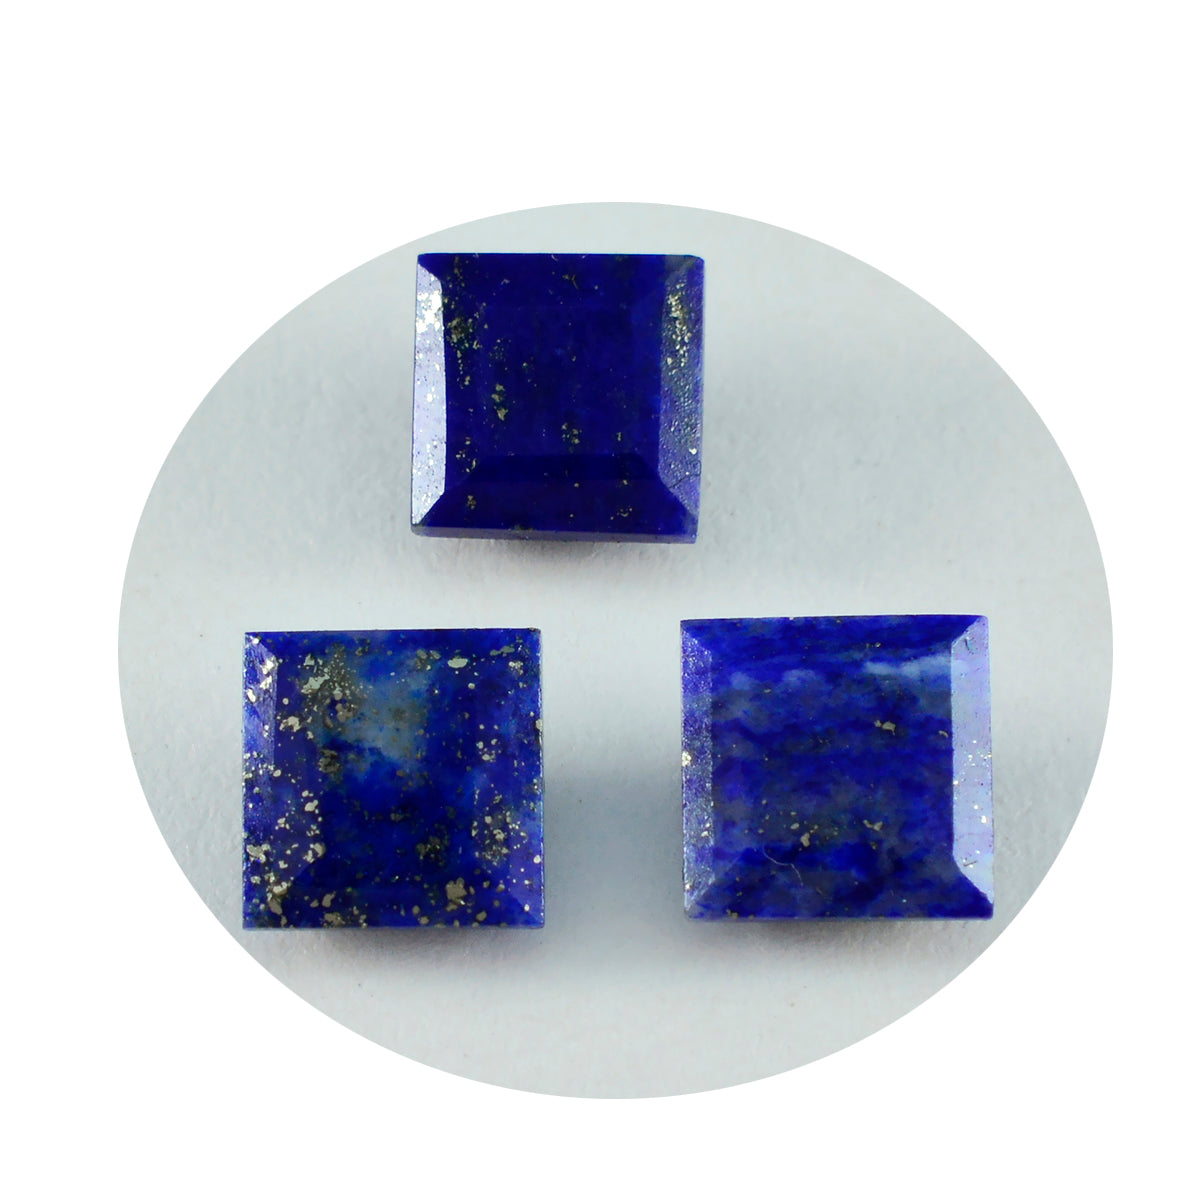 riyogems 1 шт. натуральный синий лазурит ограненный 10x10 мм квадратной формы прекрасное качество свободный драгоценный камень